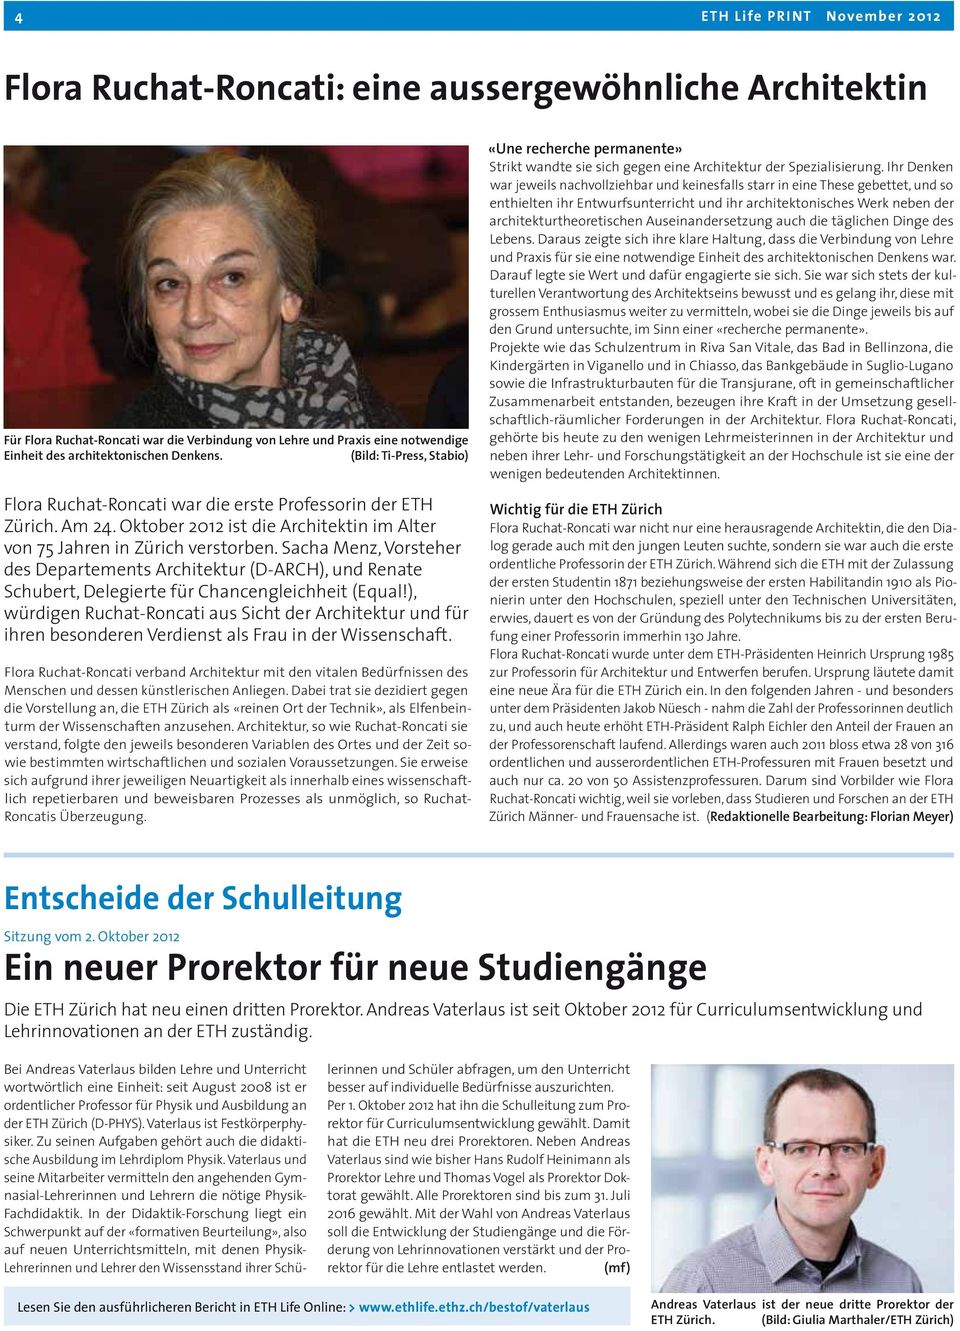 Sacha Menz, Vorsteher des Departements Architektur (D-ARCH), und Renate Schubert, Delegierte für Chancengleichheit (Equal!